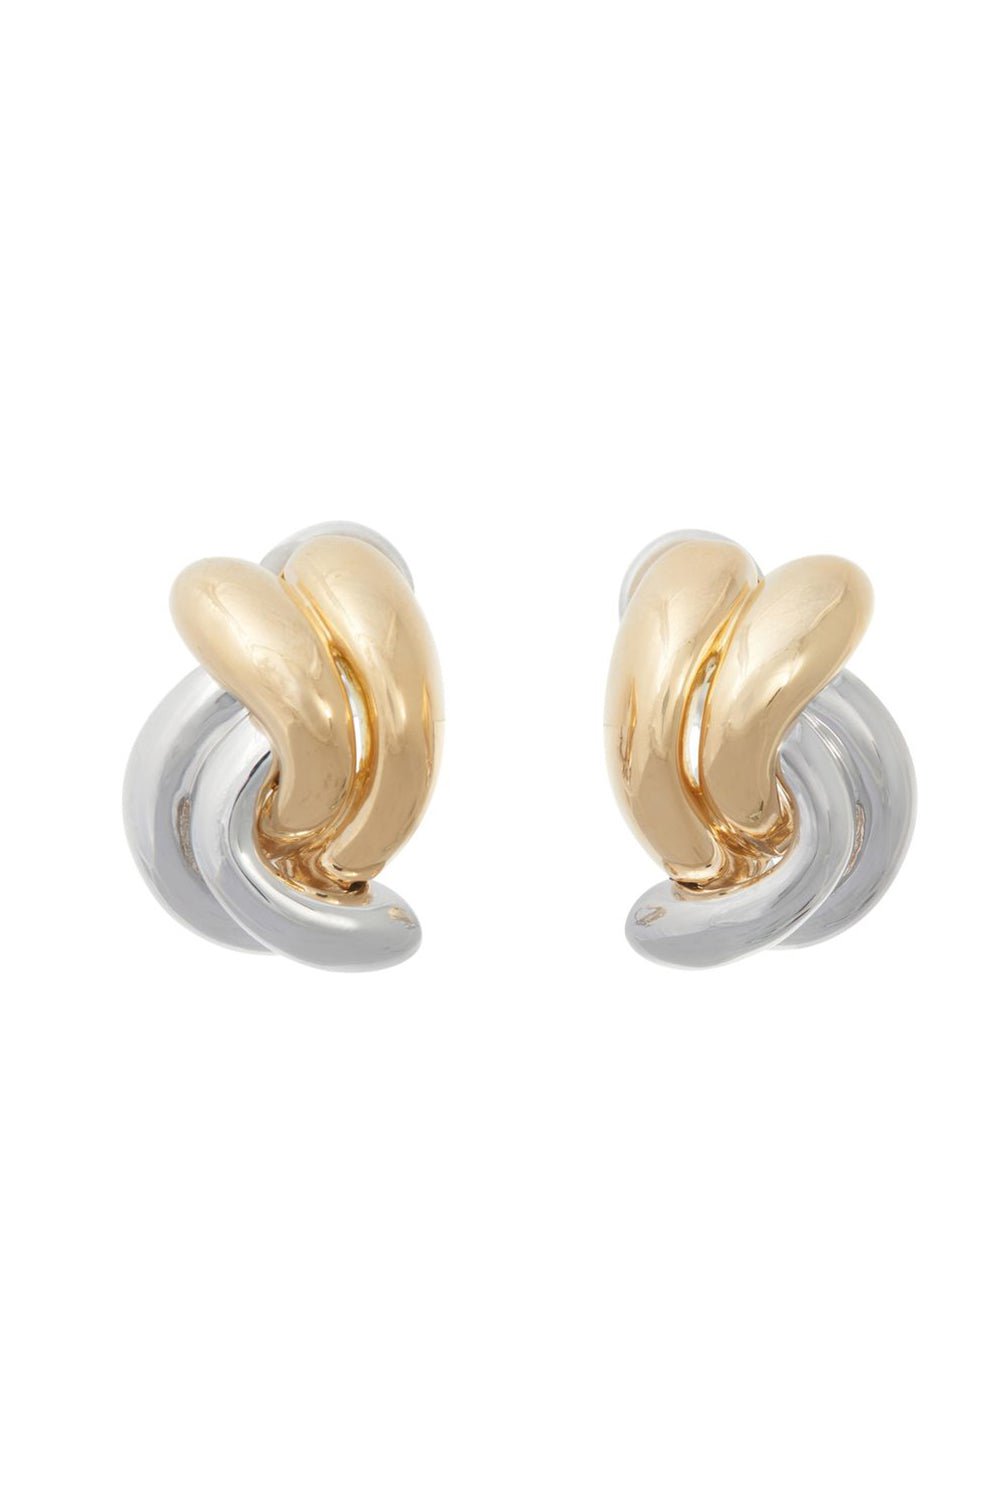 SIDNEY GARBER-Swirl Earrings-YELLOW GOLD